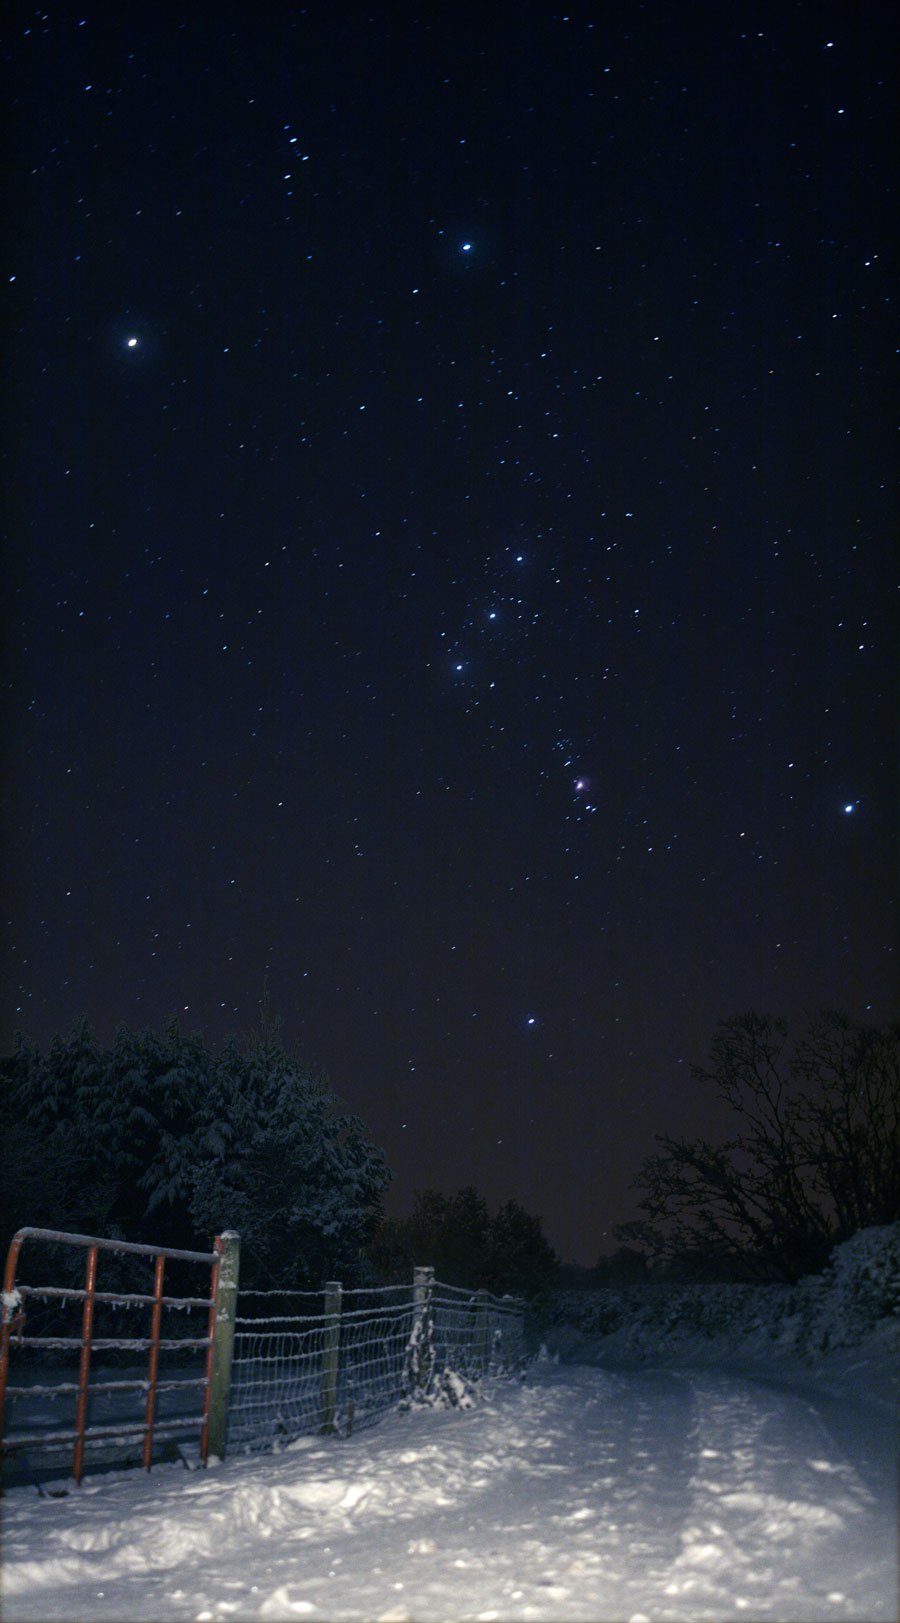 Der verschneite Weg im Bild ist kurz beleuchtet, links neben dem Weg ist ein Zaun. Dahinter erhebt sich am dunklen Himmel das Sternbild Orion mit den Gürtelsternen und dem Schwert.